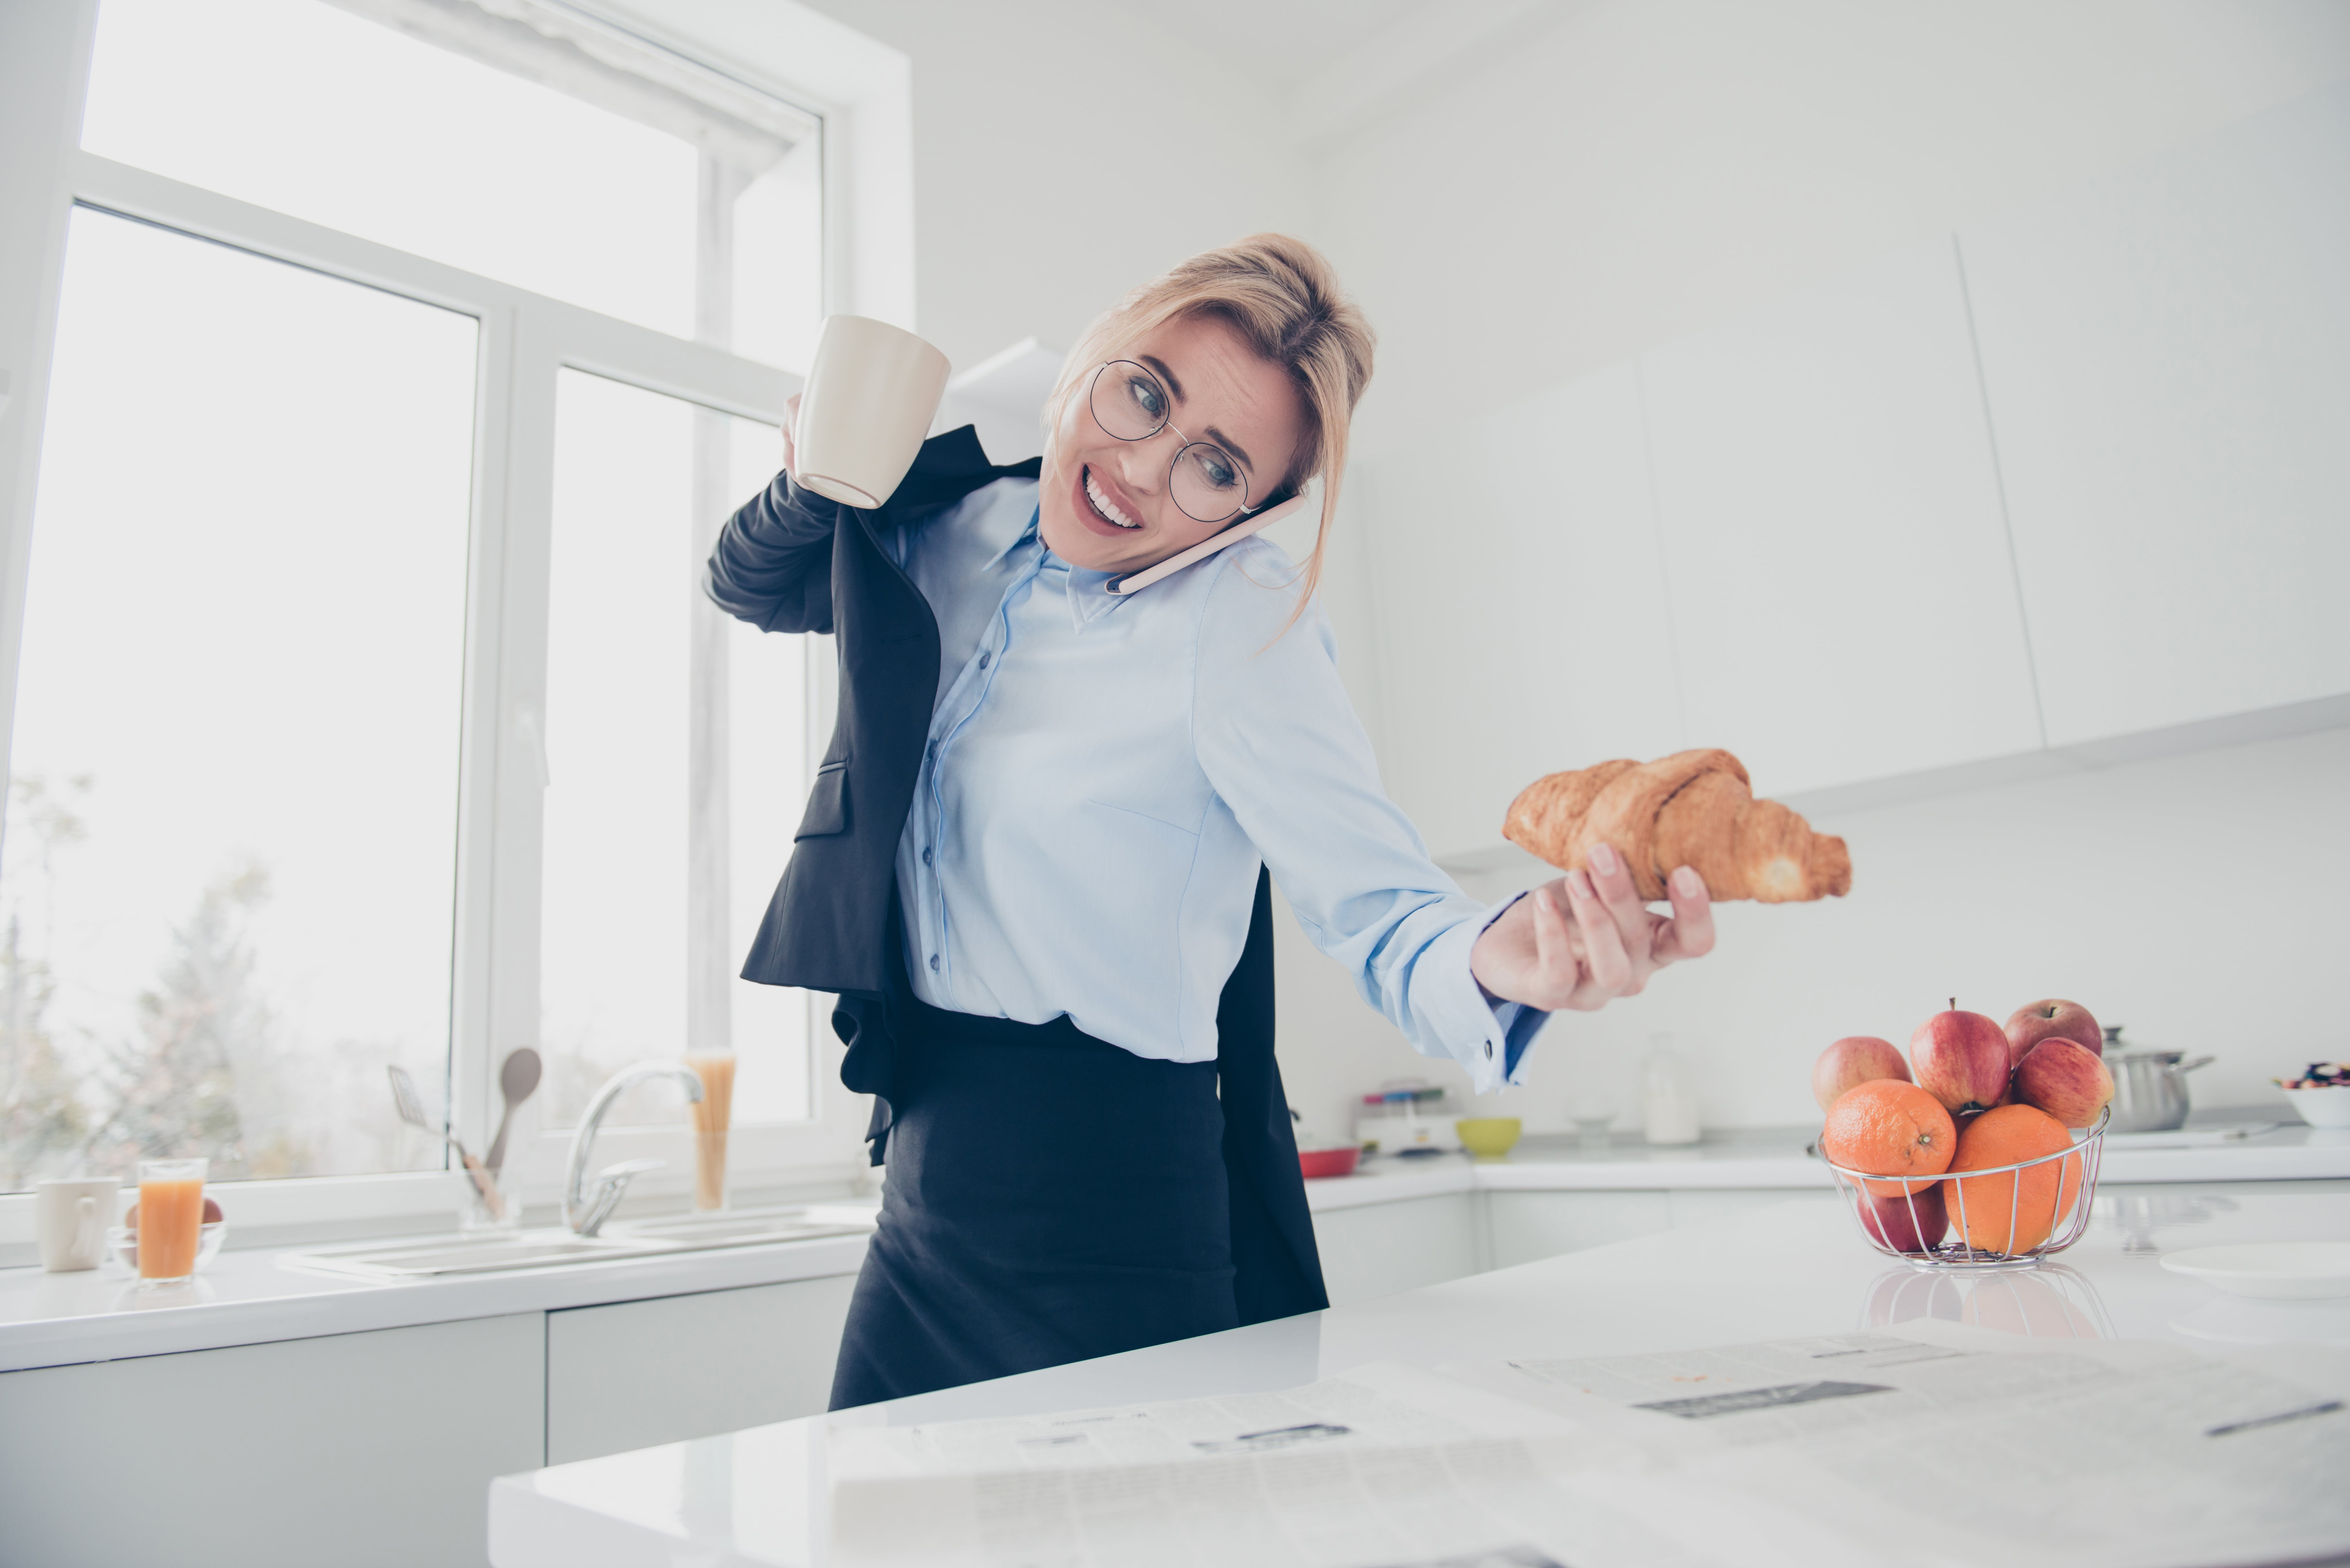 Kobieta jedząca w pośpiechu jako przykład złych nawyków żywieniowych